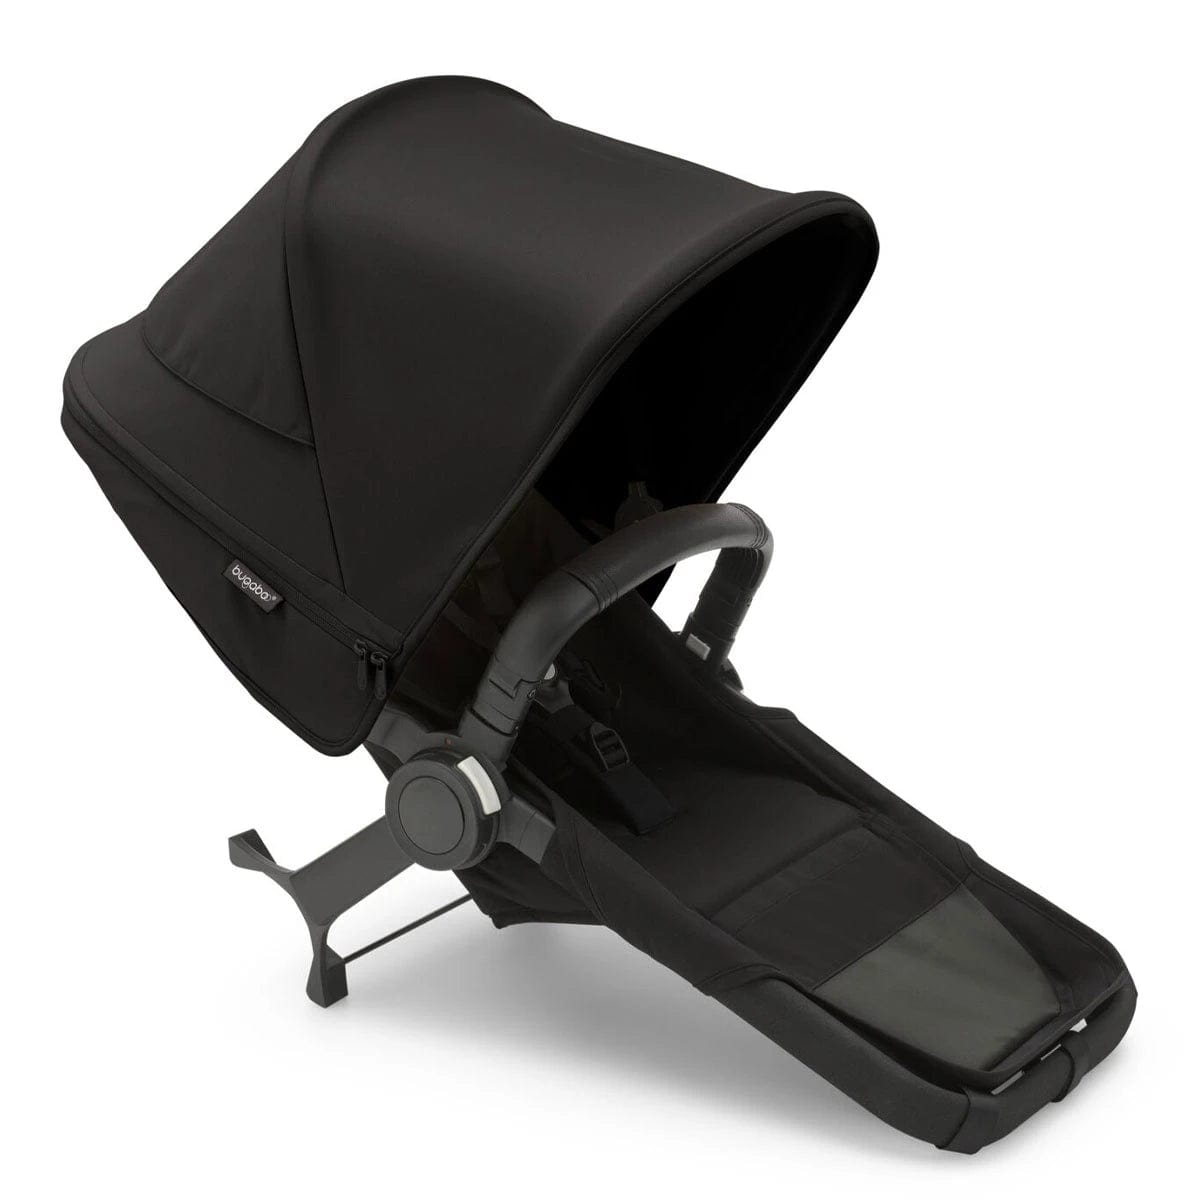 Bugaboo stroller extension set Black/Midnight Black Bugaboo Donkey5 Duo Extension Set Complete